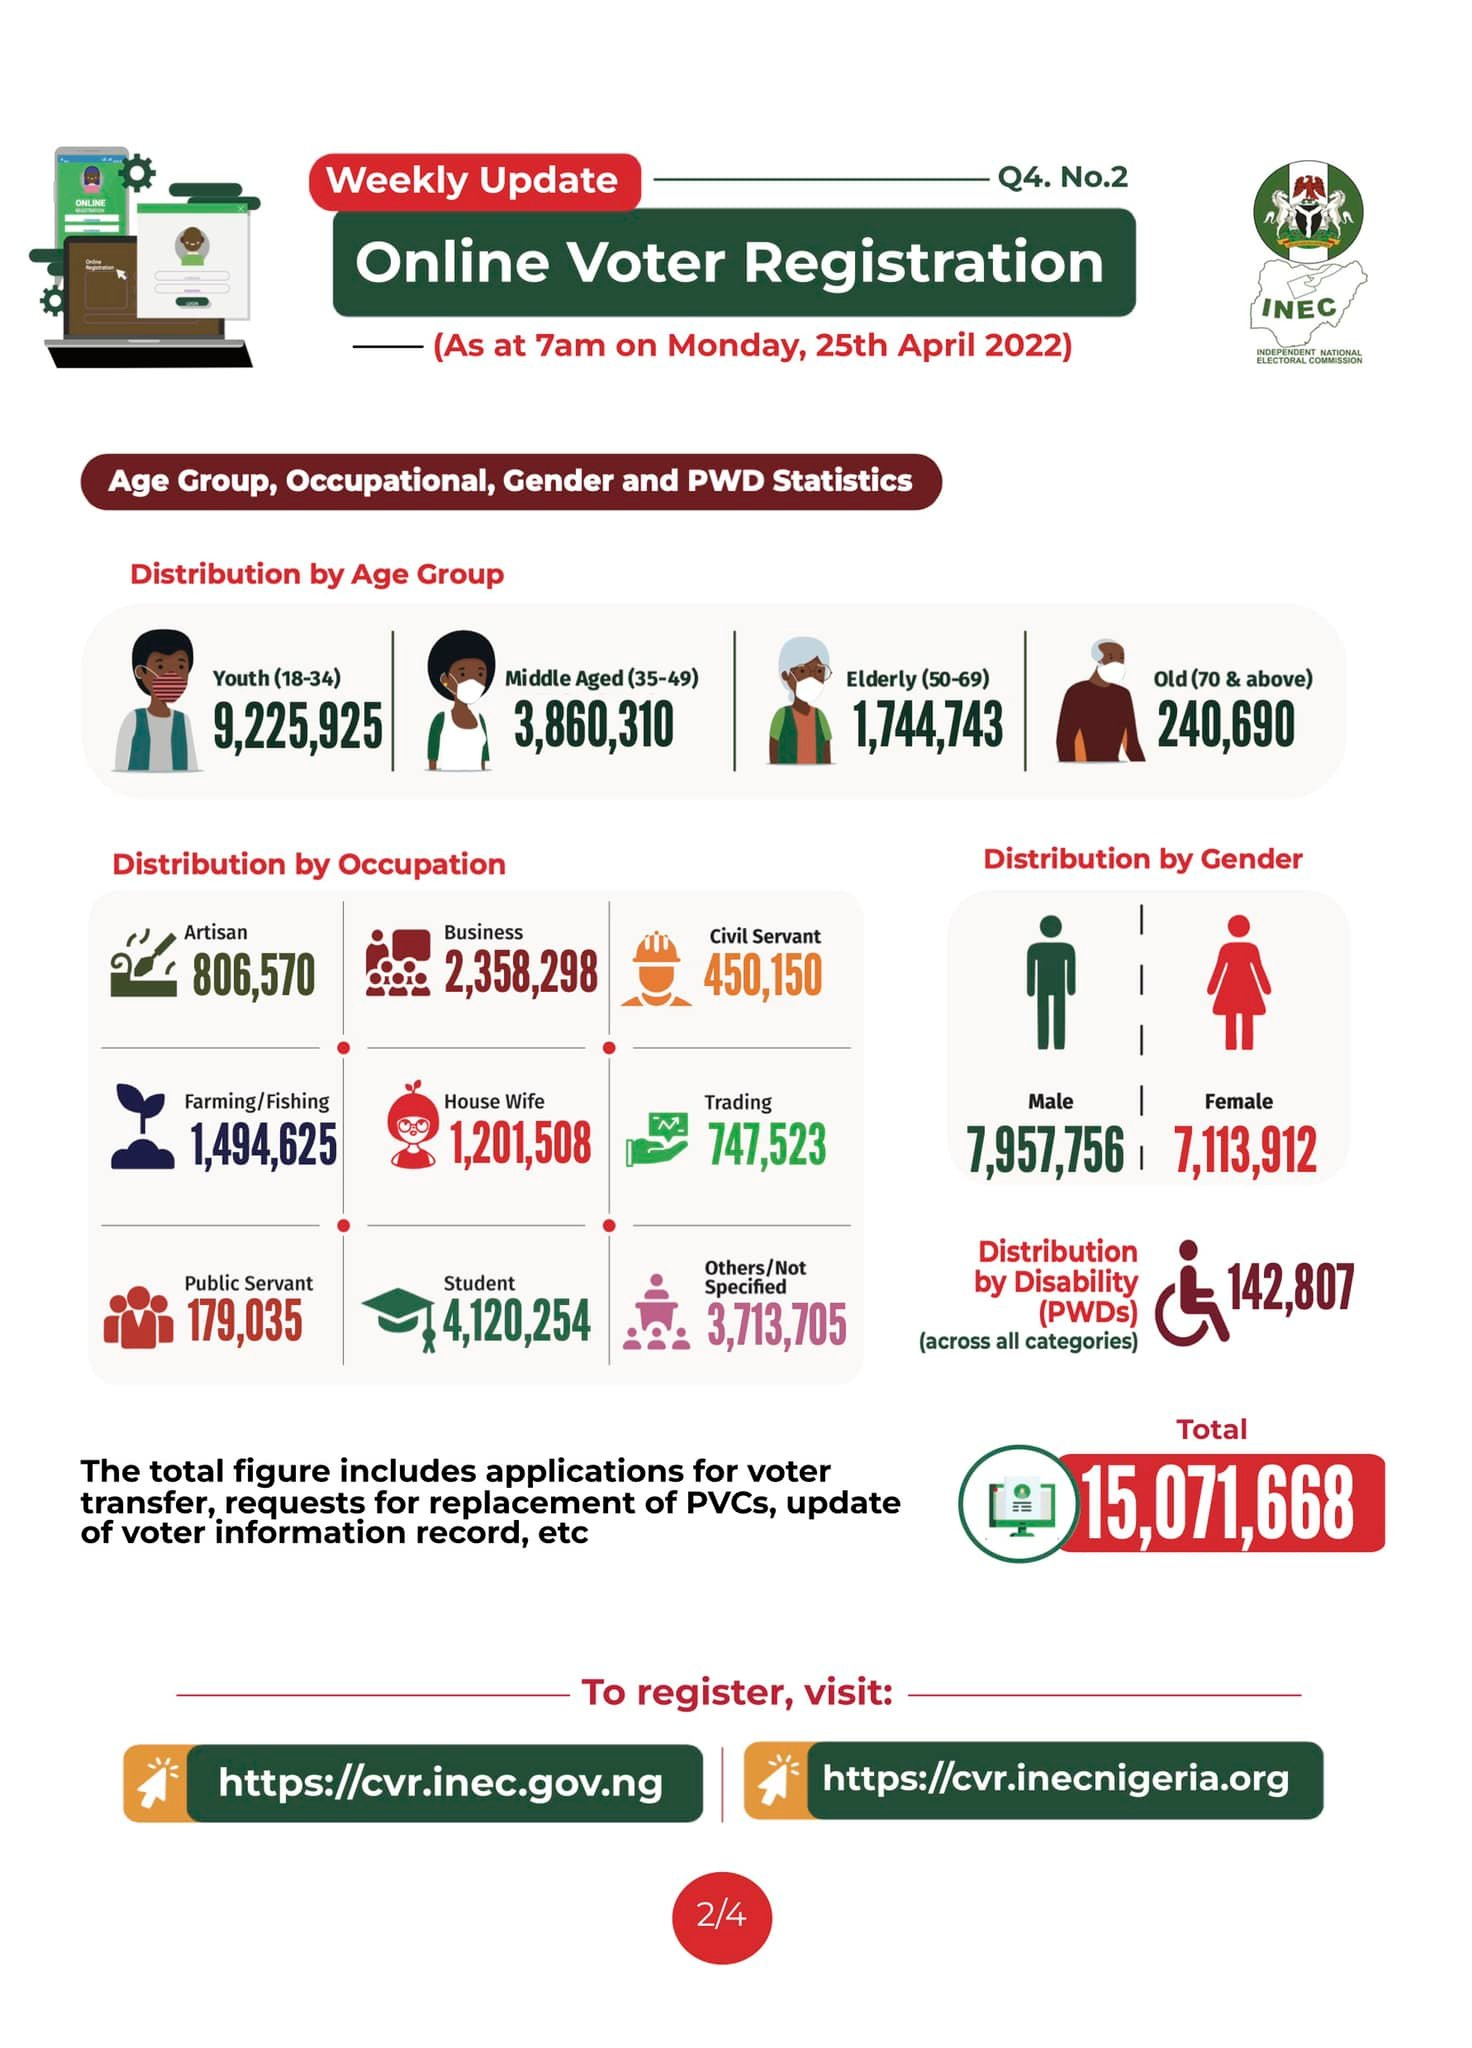 Online voter registration: Gender and PWD statistics